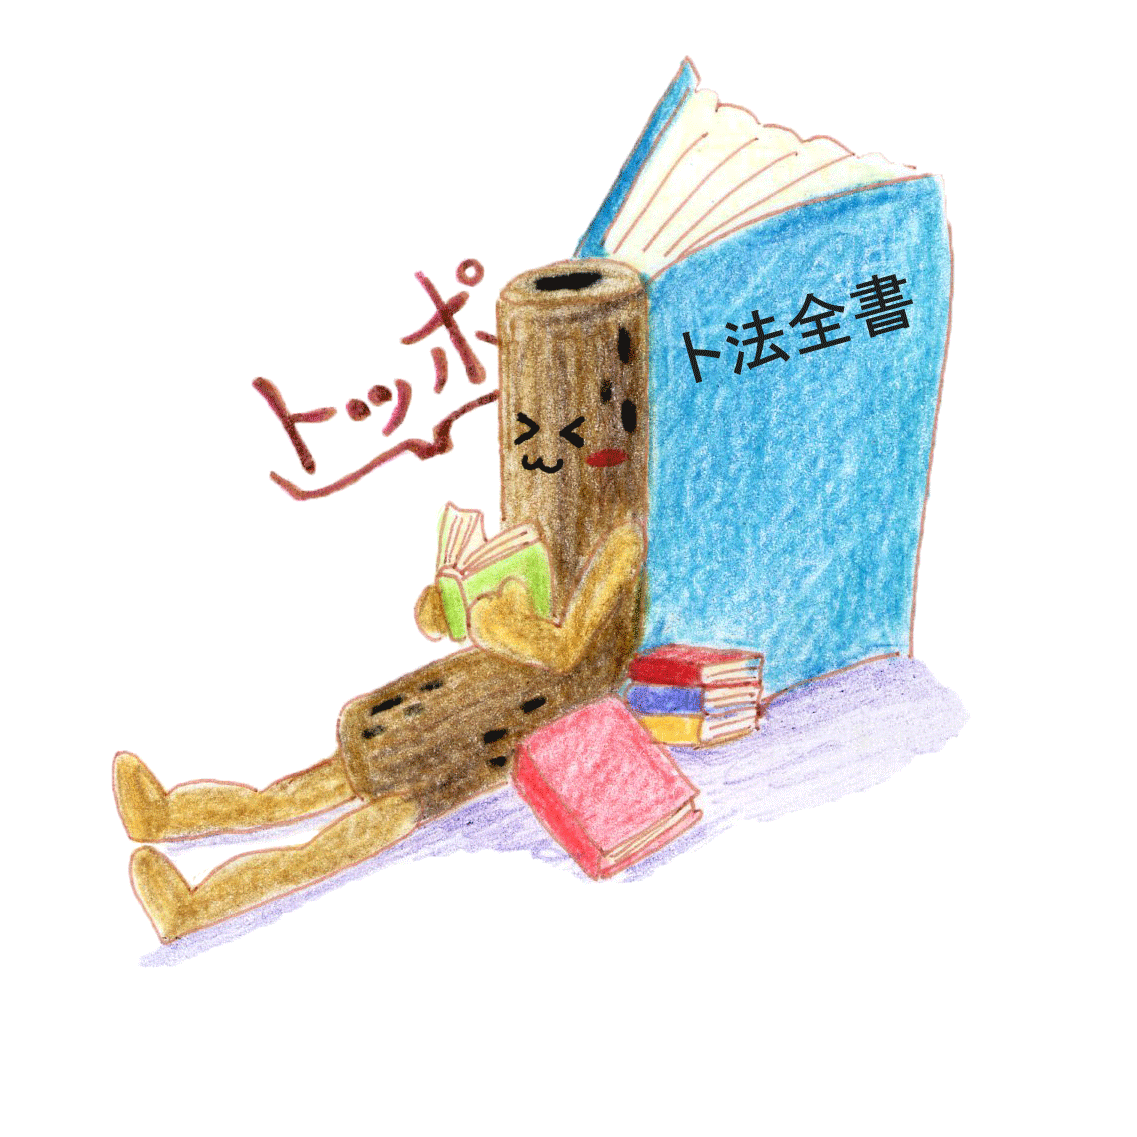 愛知大学名古屋図書館 Twitterissa おはようございます 図書館です 皆さんはカウンターで無料 配布しているブックカバーの裏に印刷されている ブックカバーの折り方 をマスターしましたか 結局これを覚えれば大抵の紙がブックカバーになるので お気に入りの文庫本